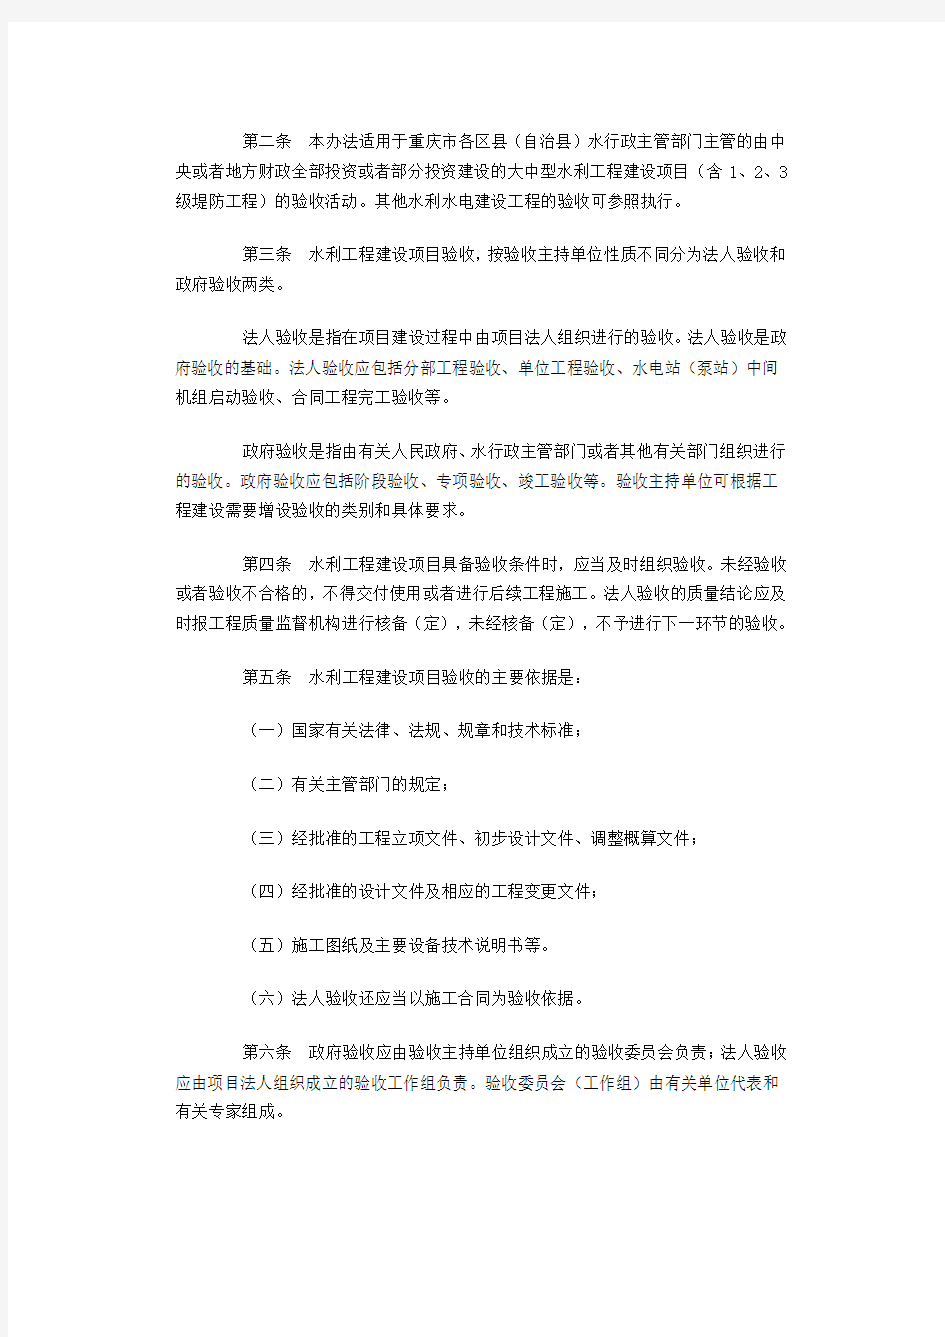 重庆市水局关于印发《重庆市水利工程验收管理办法》通知渝水基2008-47号